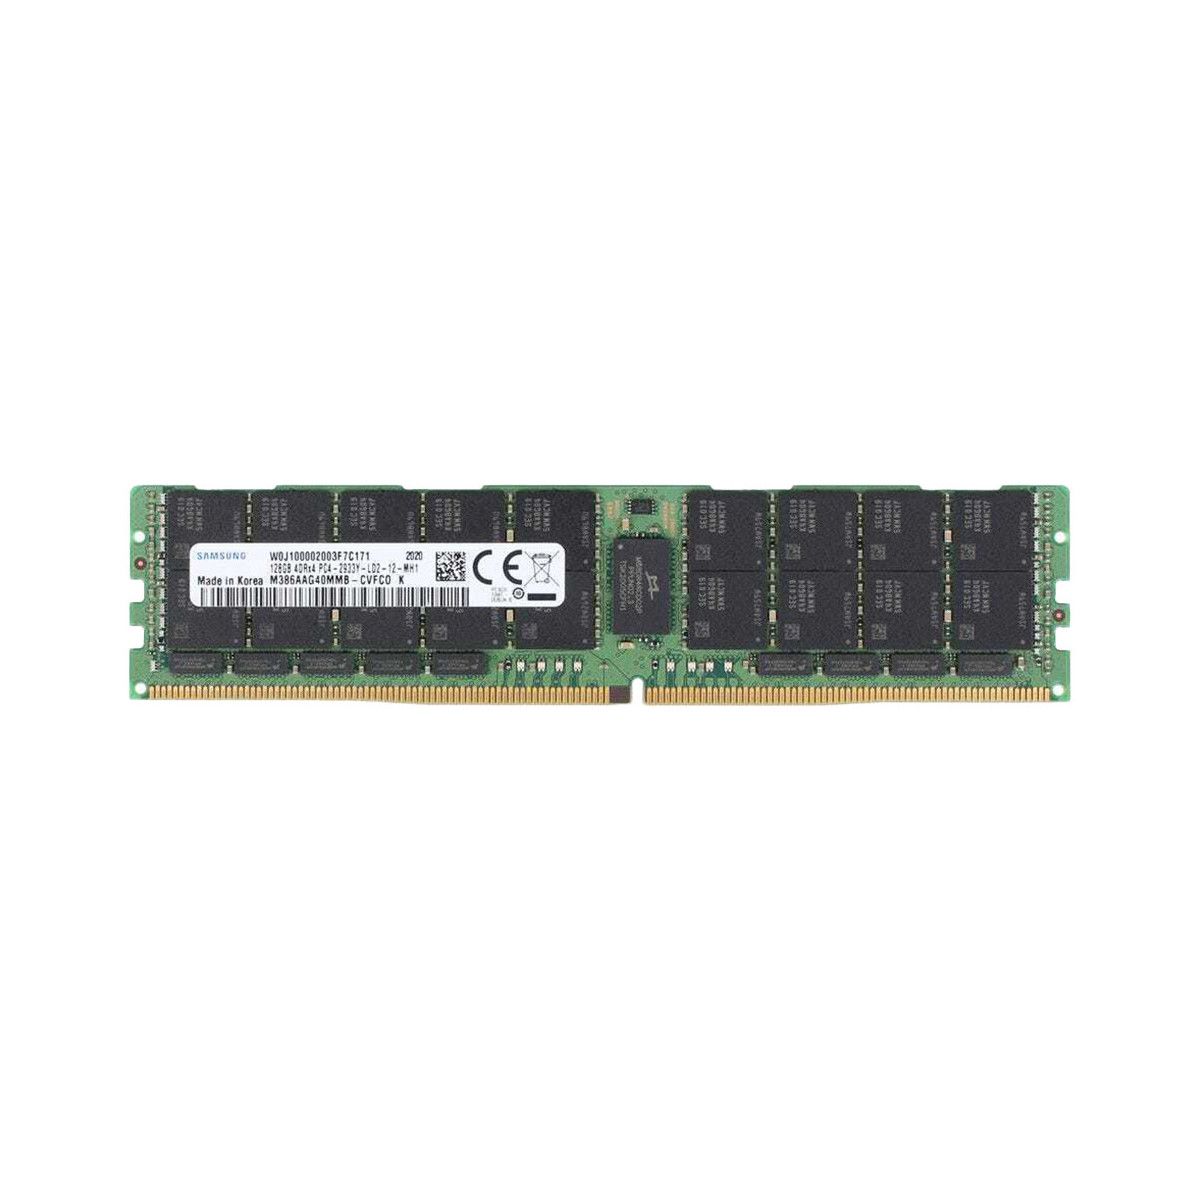 P00928-B21-MS - Memstar 1x 128GB DDR4-2933 LRDIMM PC4-23466U-L - Mem-star Compatible OEM Memory 1 - Memstar 